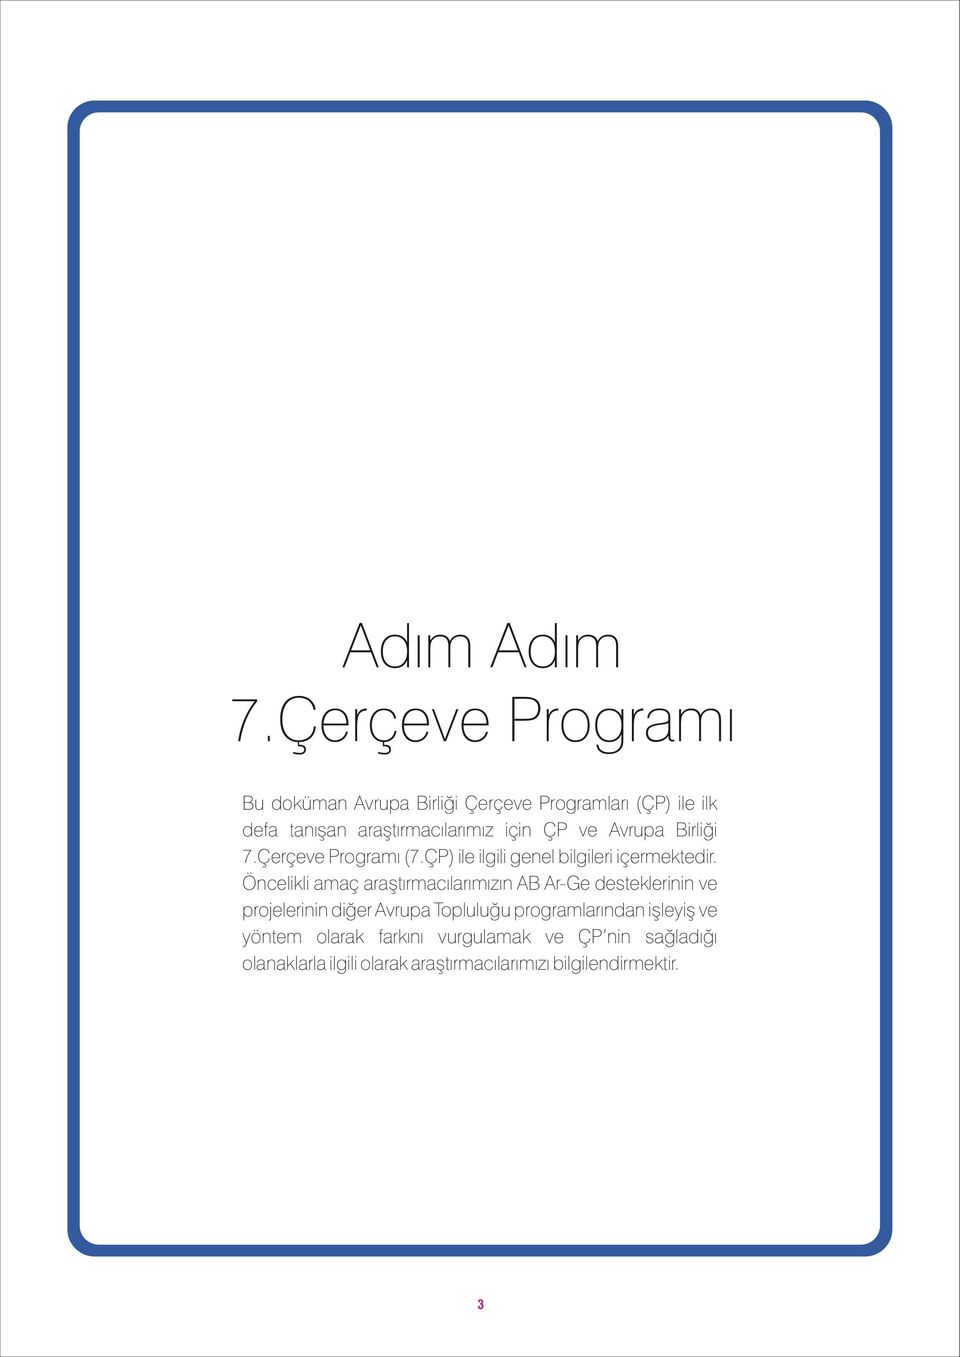 ÇP ve Avrupa Birliði 7.Çerçeve Programý (7.ÇP) ile ilgili genel bilgileri içermektedir.